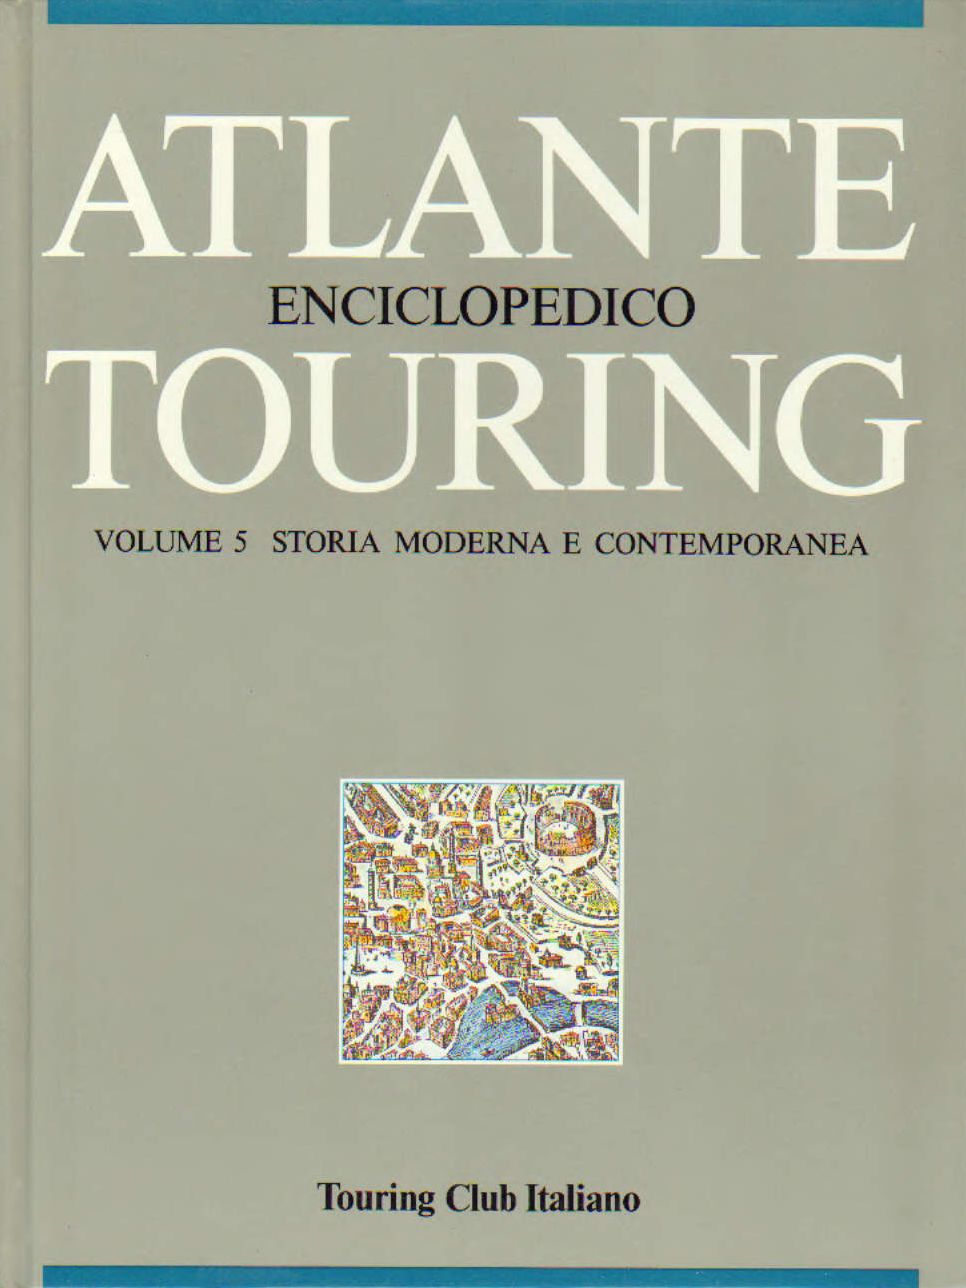 Atlante Enciclopedico Touring volume 5 Storia Moderna e contempo